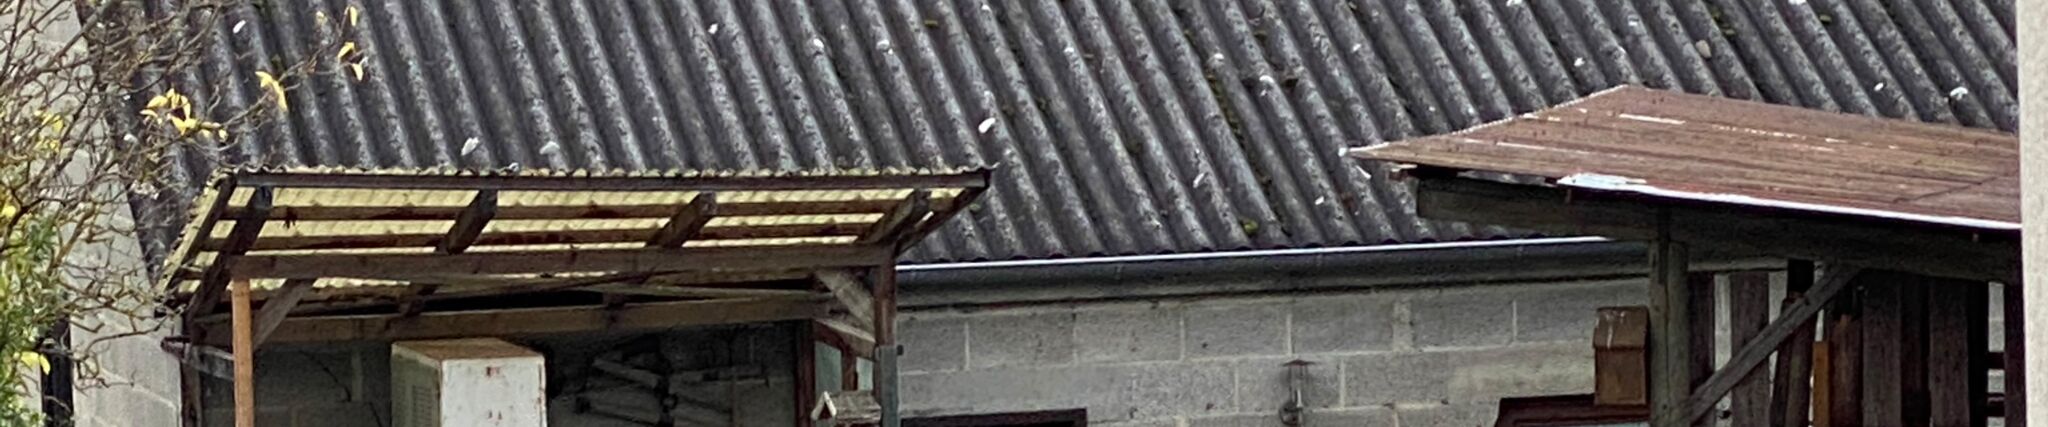 Das Foto für den Asbest Auffrischungskurs zeigt ein altes Gebäude mit Asbestplatten auf dem Dach.